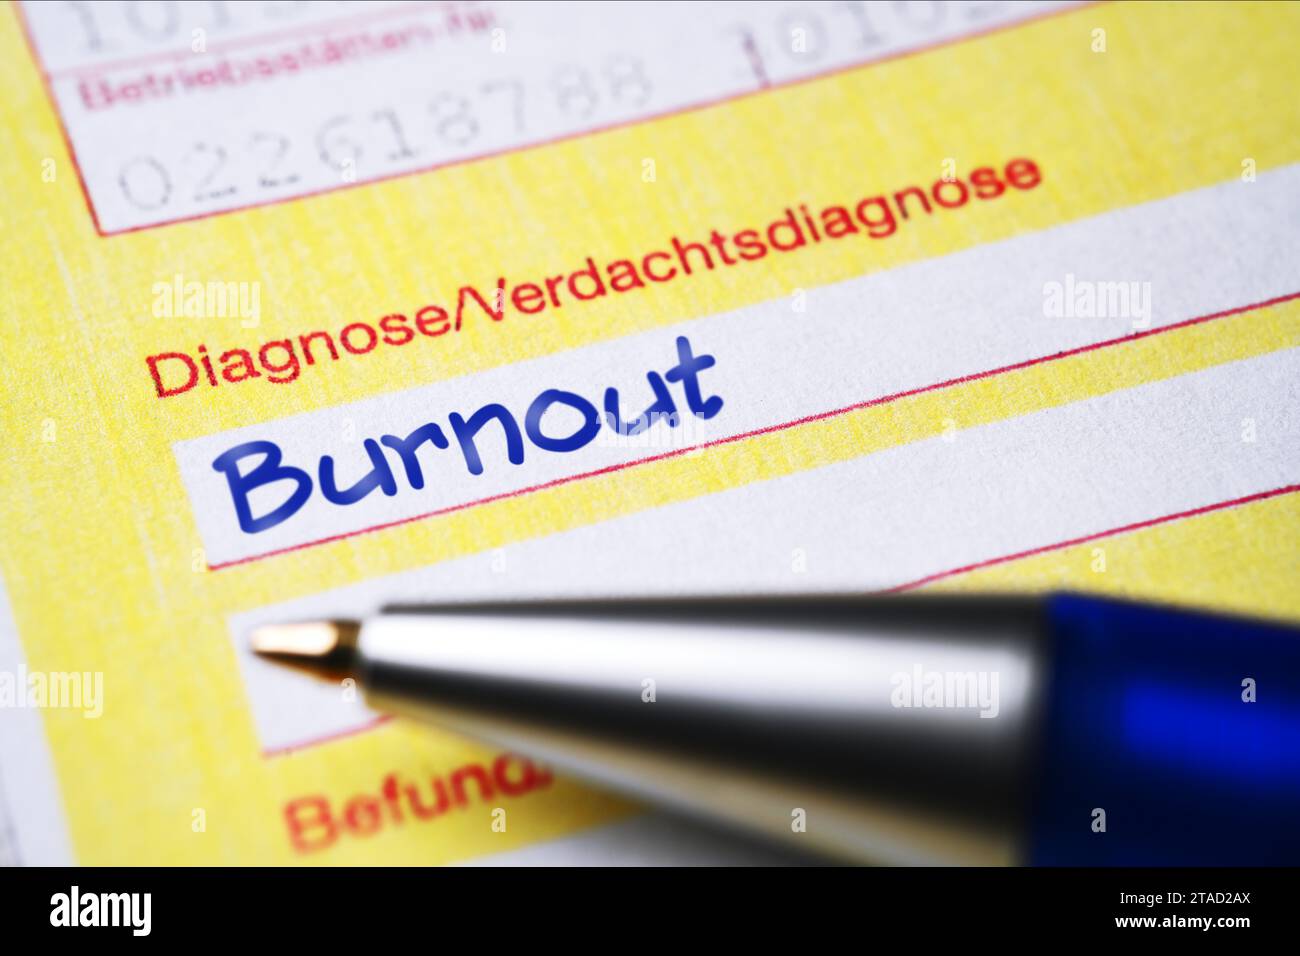 Nota di trasferimento medico con diagnosi Burnout, fotomontaggio Foto Stock